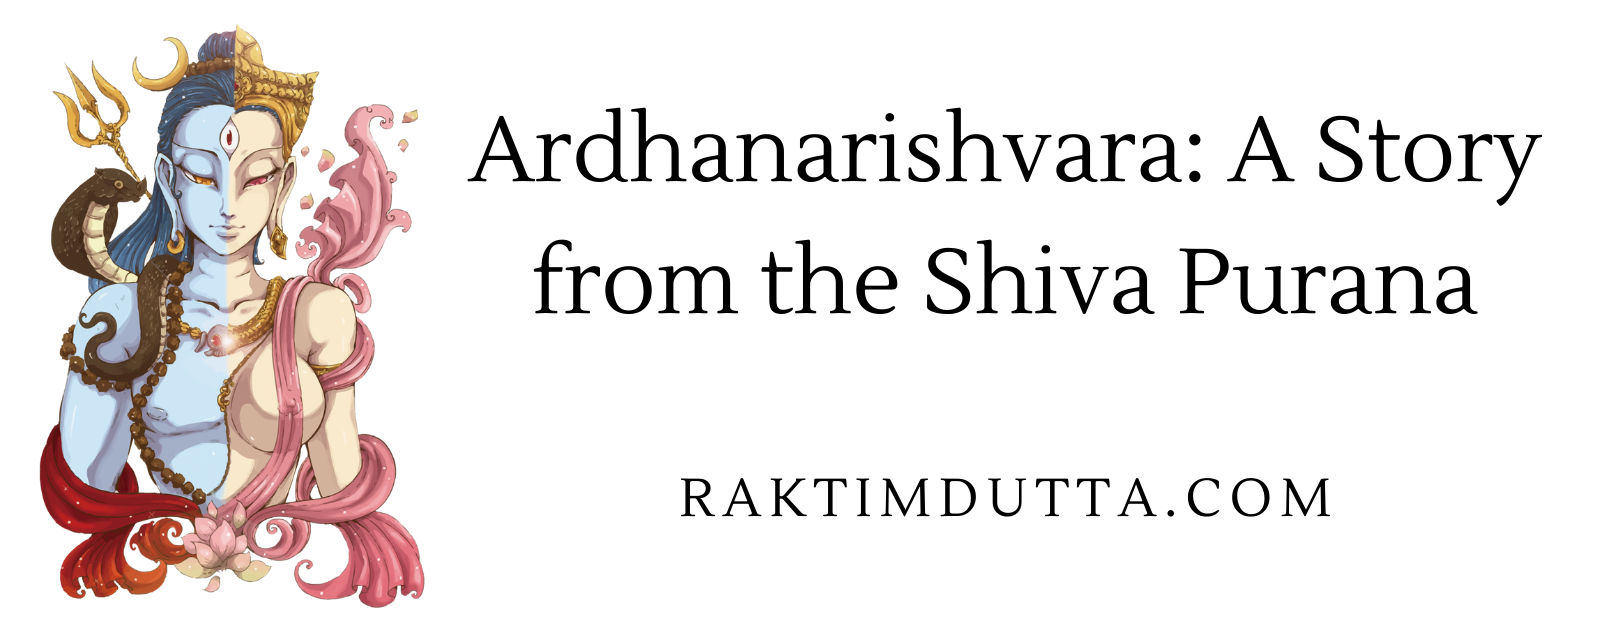 Ardhanarishvara: An Untold Story from the Shiva Purana